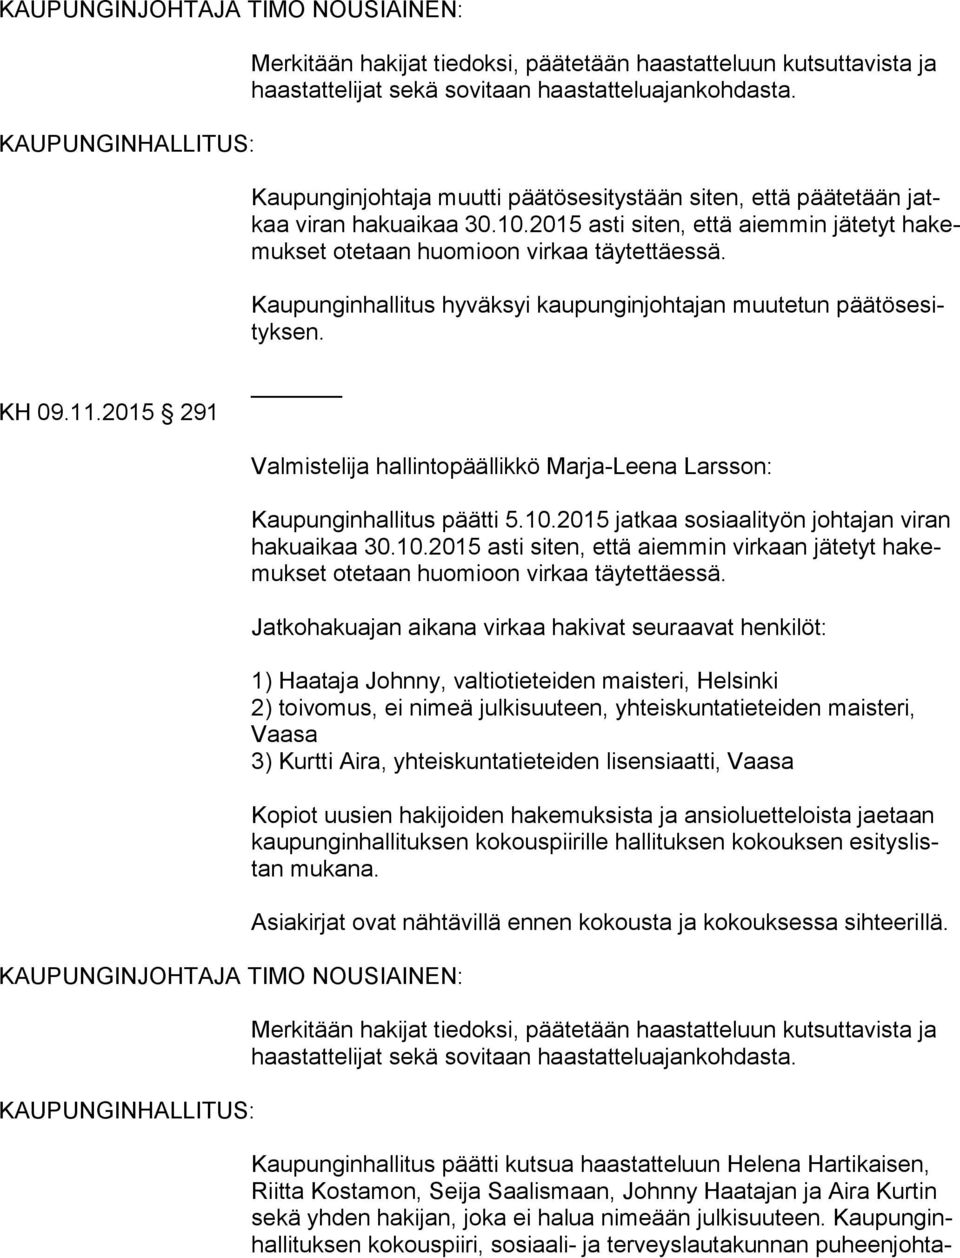 Kaupunginhallitus hyväksyi kaupunginjohtajan muutetun pää tös esityk sen. KH 09.11.2015 291 Valmistelija hallintopäällikkö Marja-Leena Larsson: Kaupunginhallitus päätti 5.10.